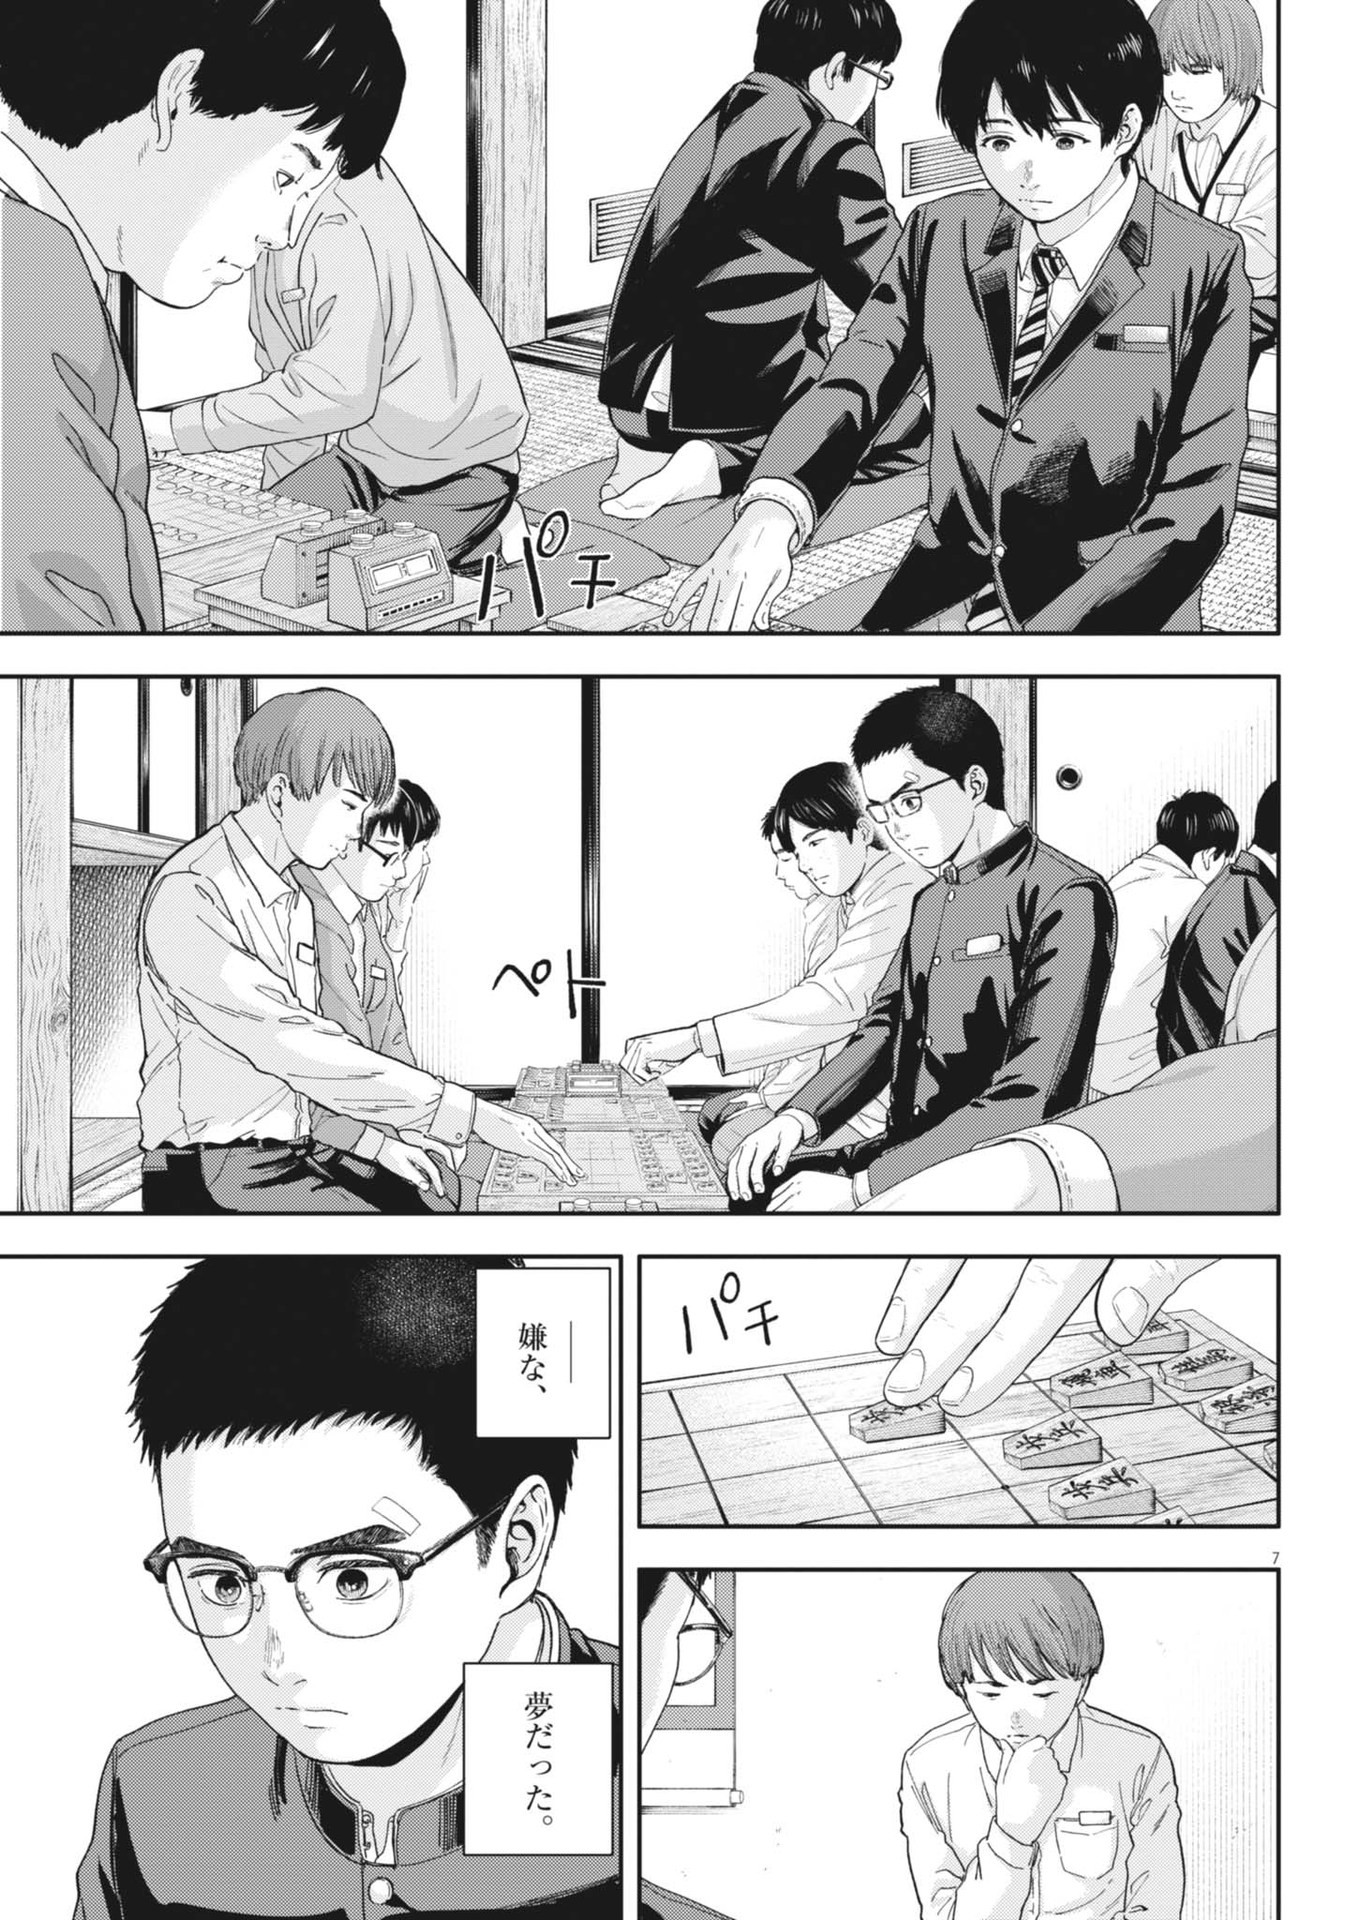 Yumenashi-sensei no Shinroshidou - Chapter 27 - Page 7